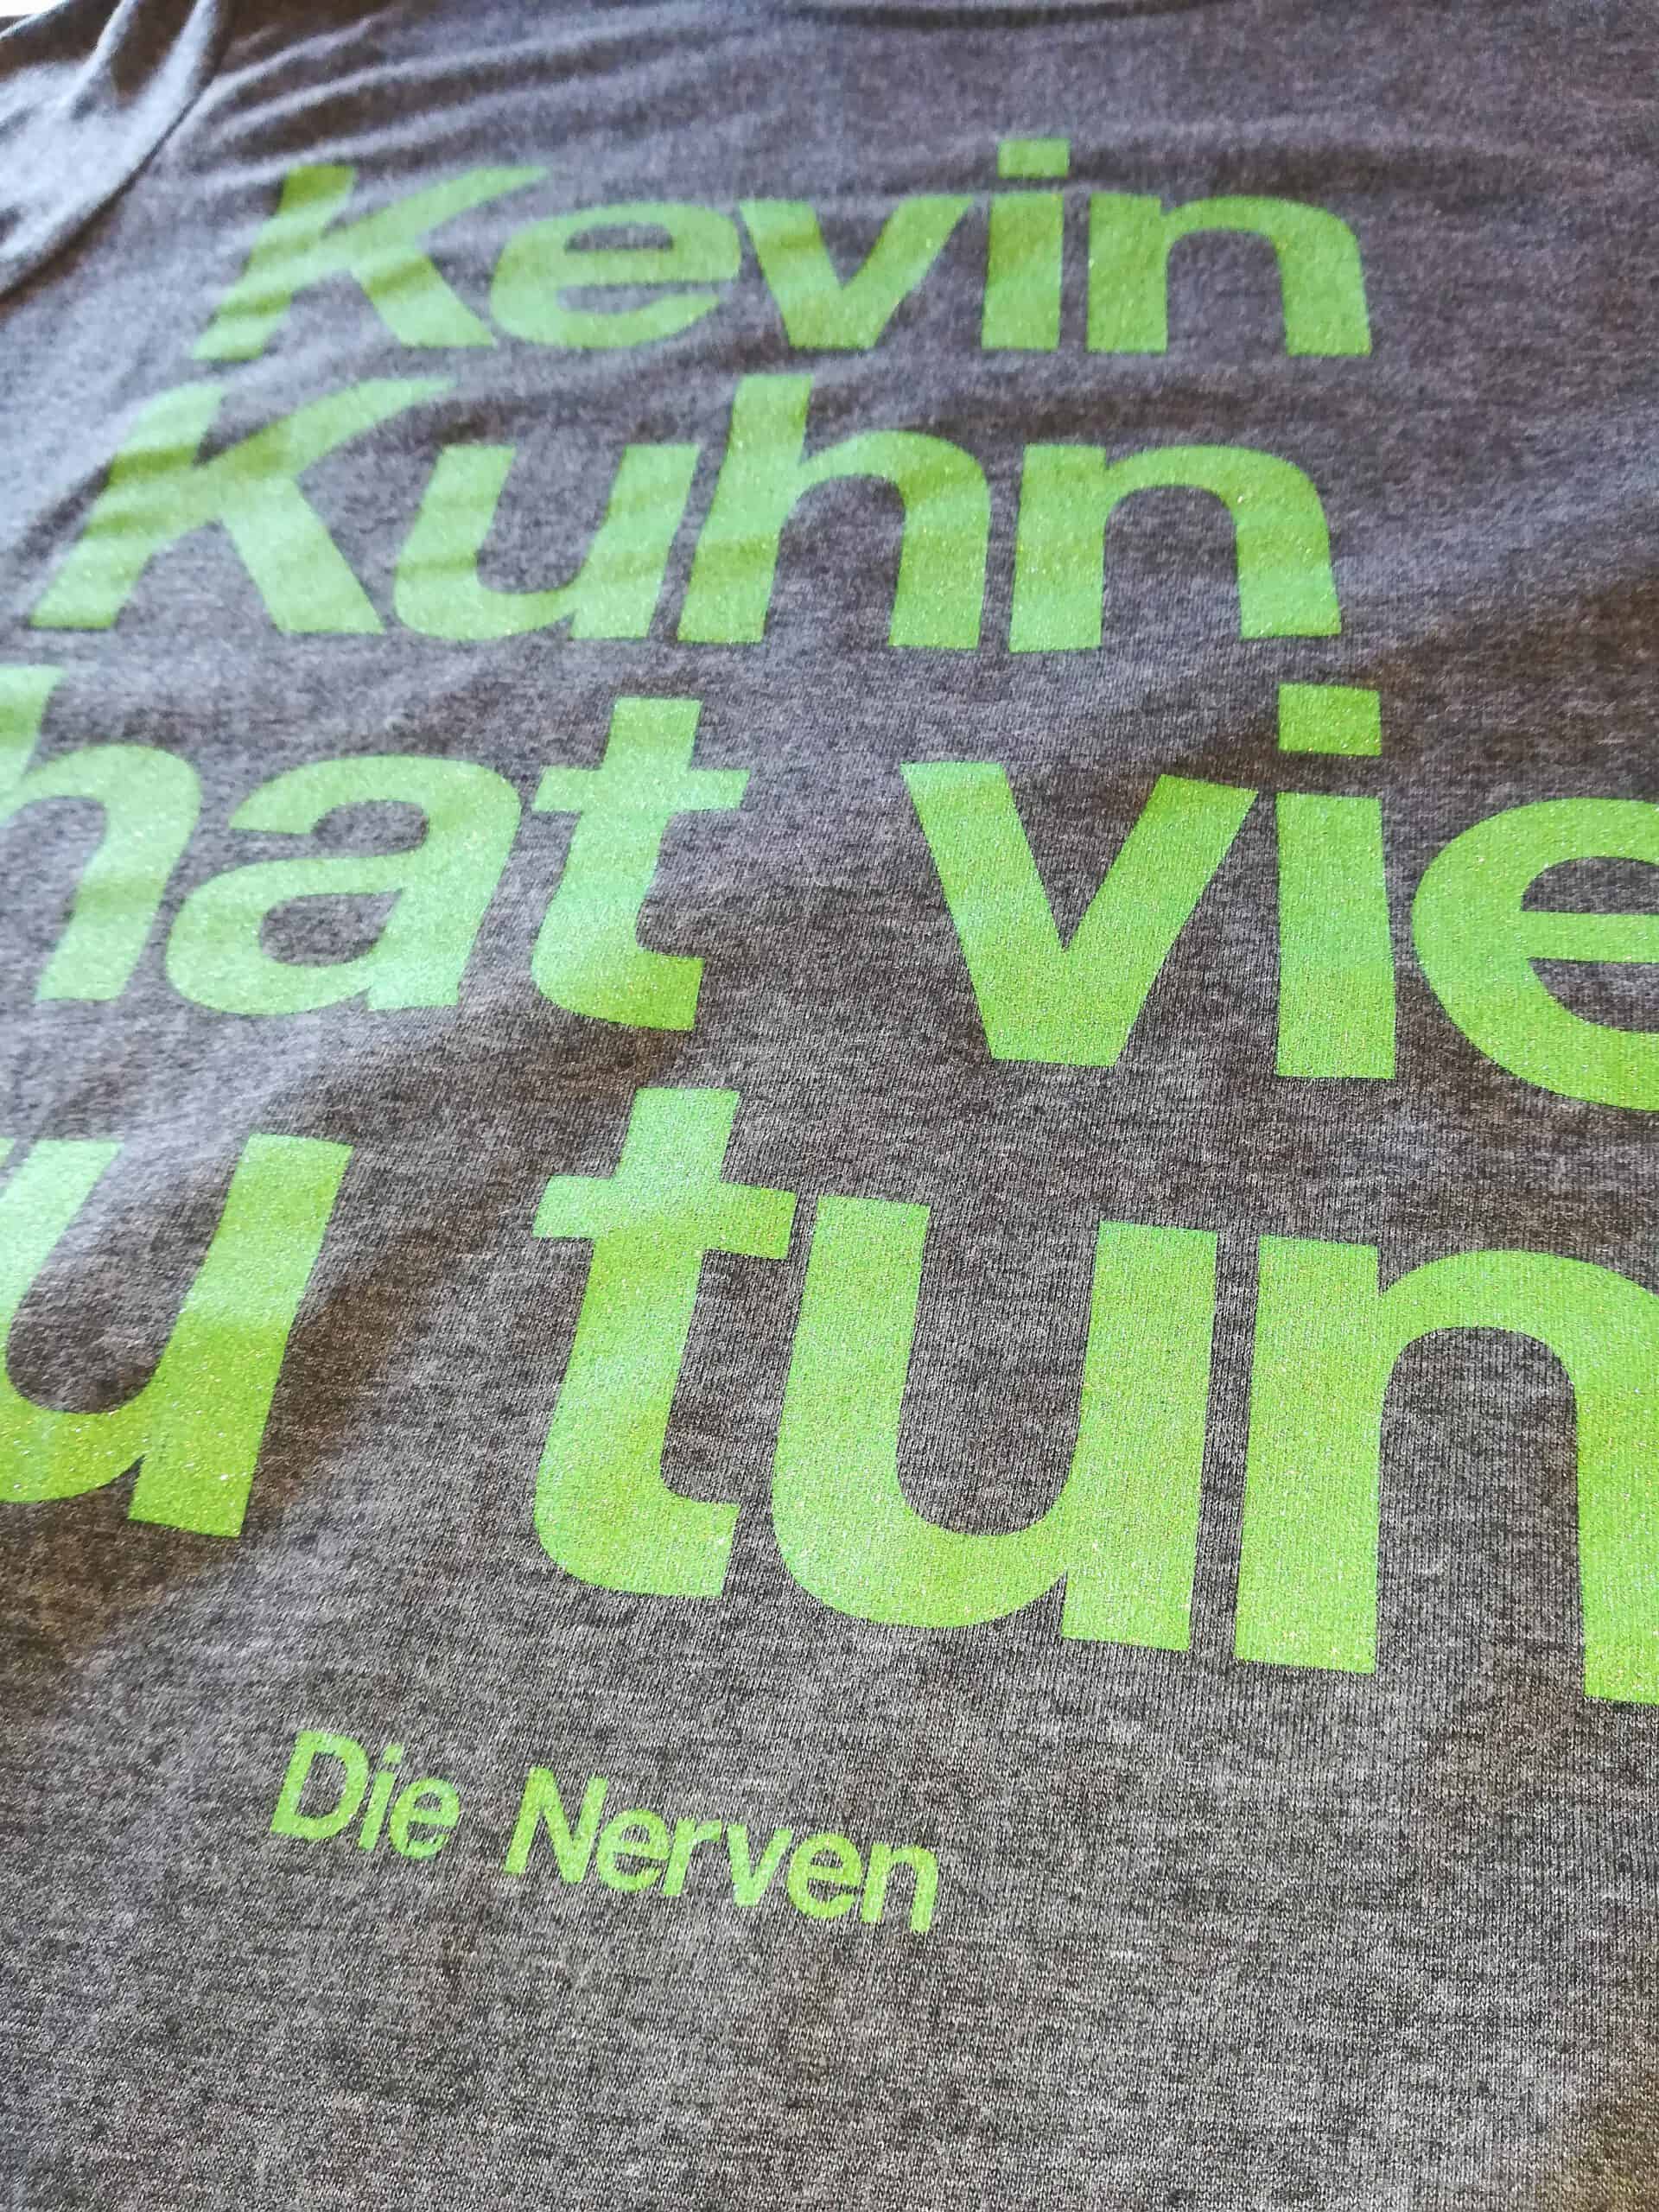 Die Nerven – Kevin Kuhn Shirt (green sparkling print) Das TCM-Die Nerven-Klassiker-Shirt in neuem Colourway! Limitiert auf 30 copies! Die Nerven - Kevin Kuhn Shirt mit grünem metallic Print!!